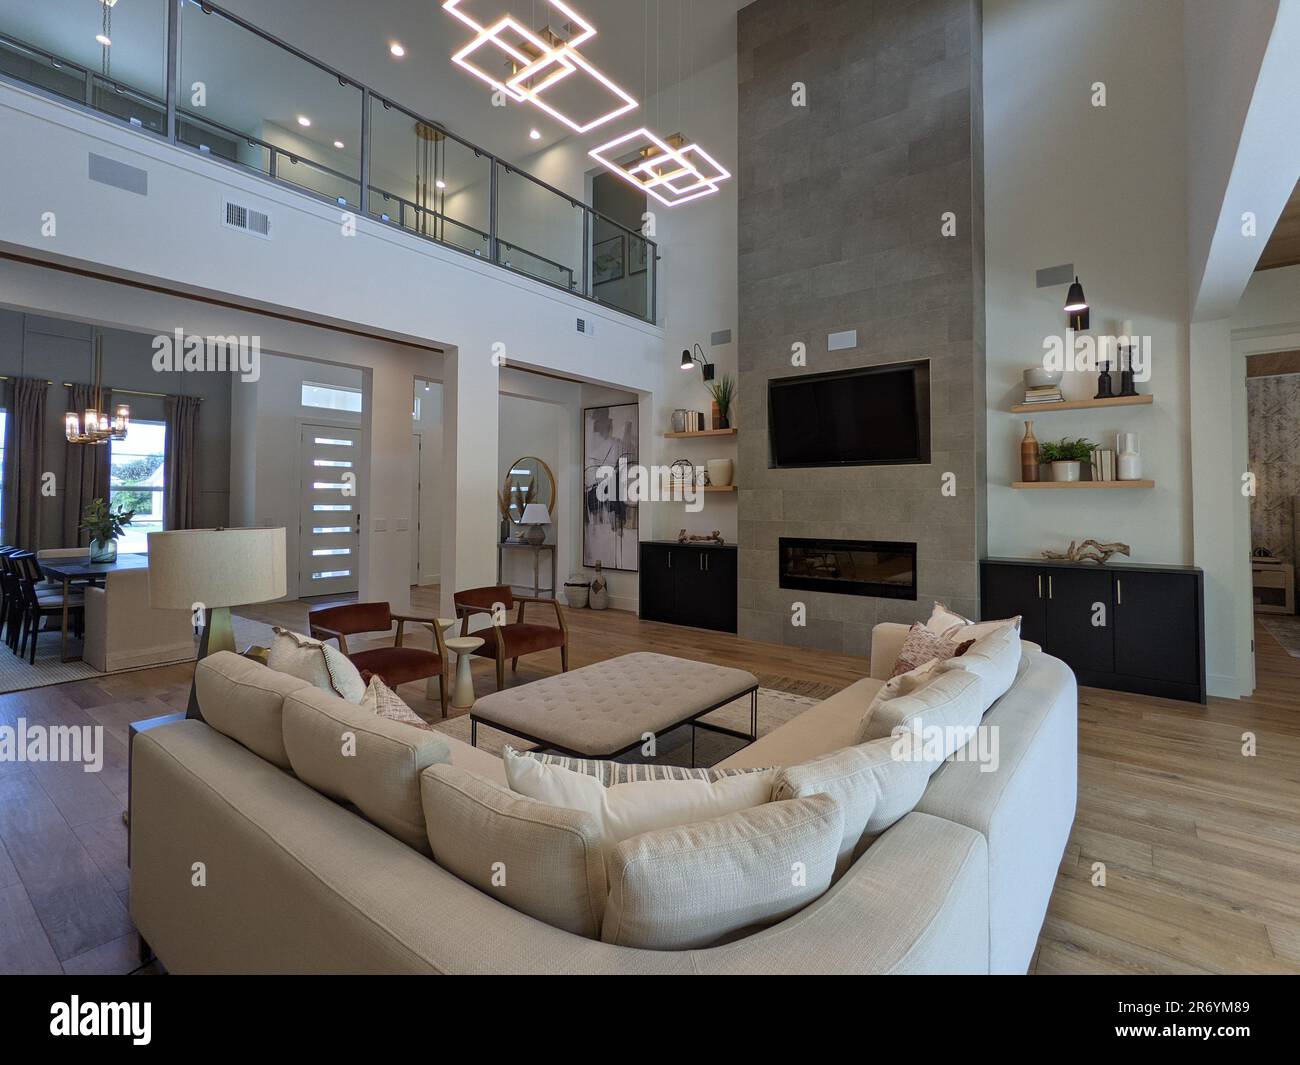 Ein geräumiges Wohnzimmer, komplett mit einer Reihe von Möbelstücken und Beleuchtungskörpern. Stockfoto